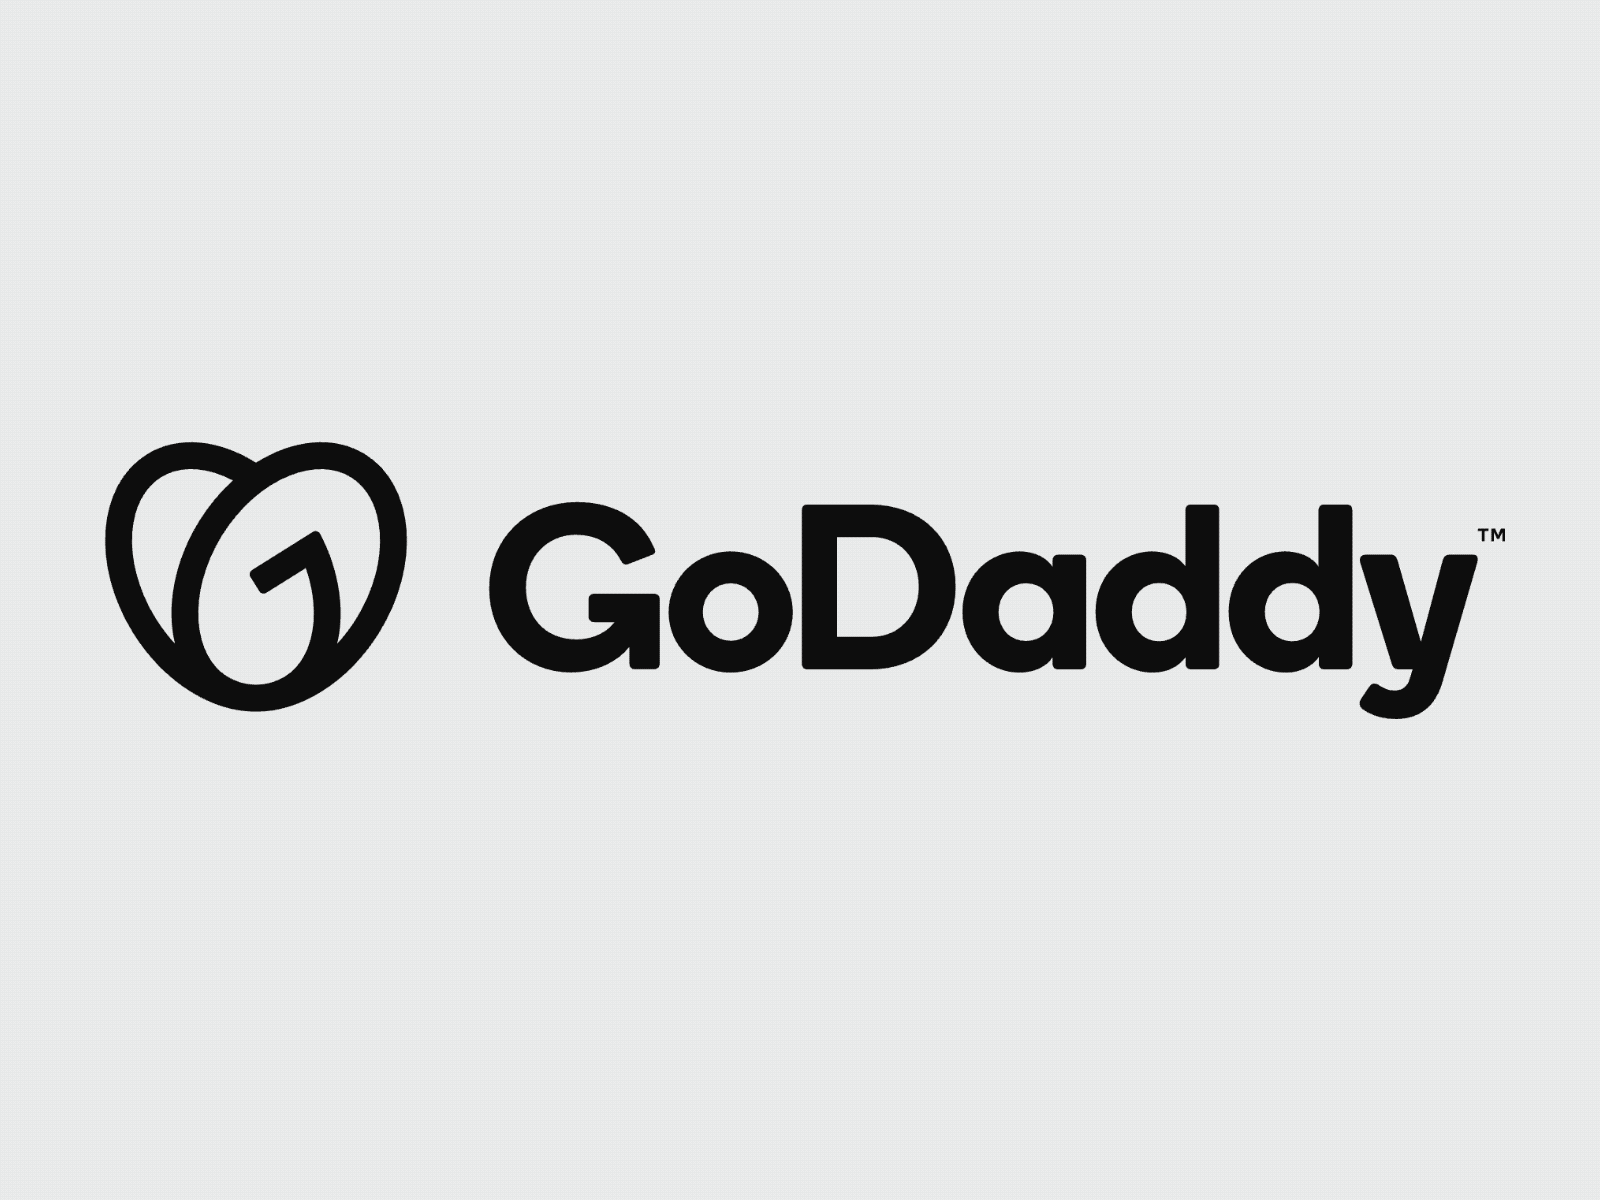 GoDaddyGo godaddy logo animation movement new job transitions